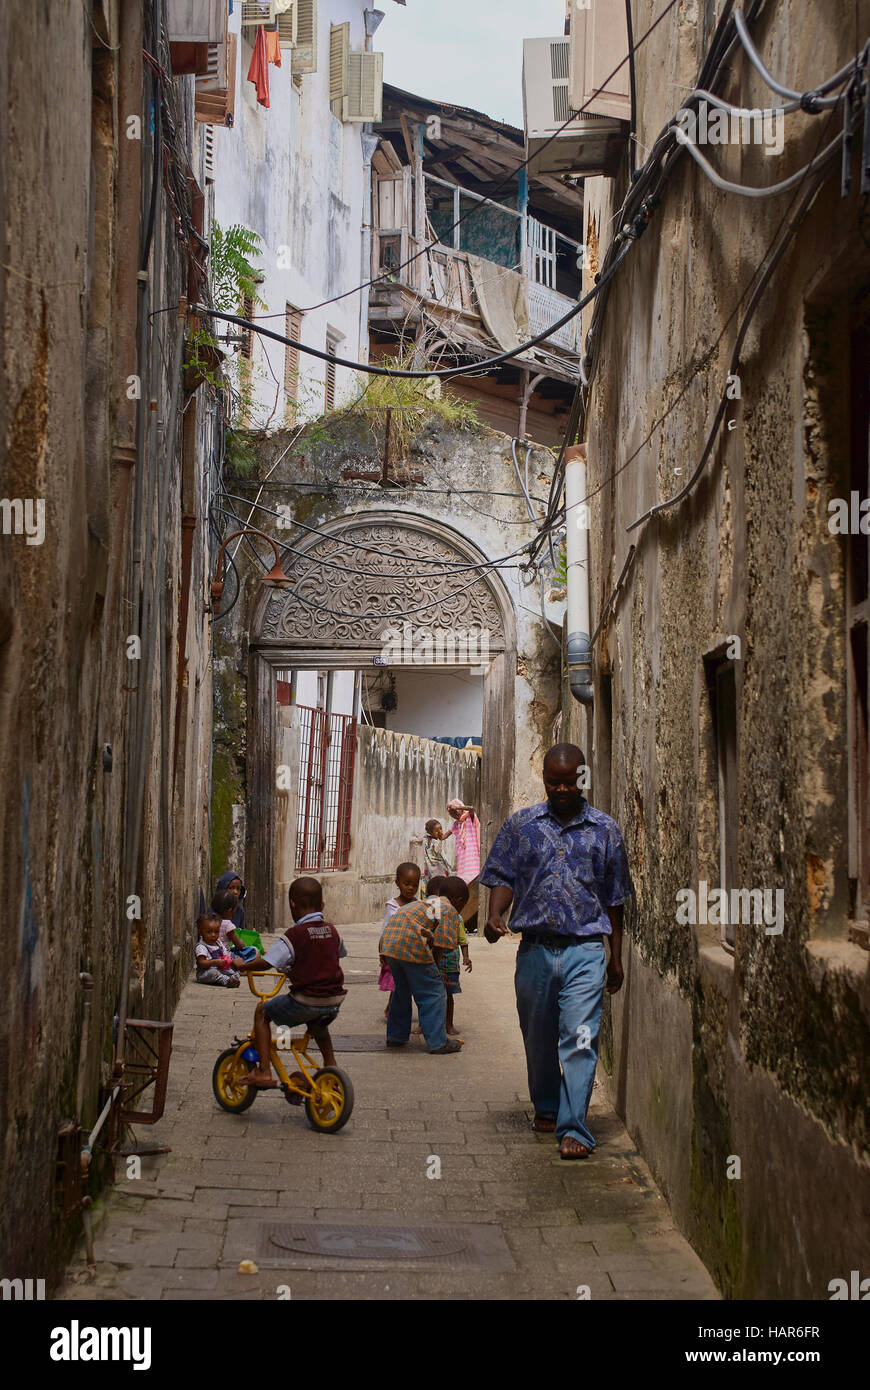 La vida en la calle, en la antigua ciudad de piedra de Zanzíbar, Tanzania Foto de stock